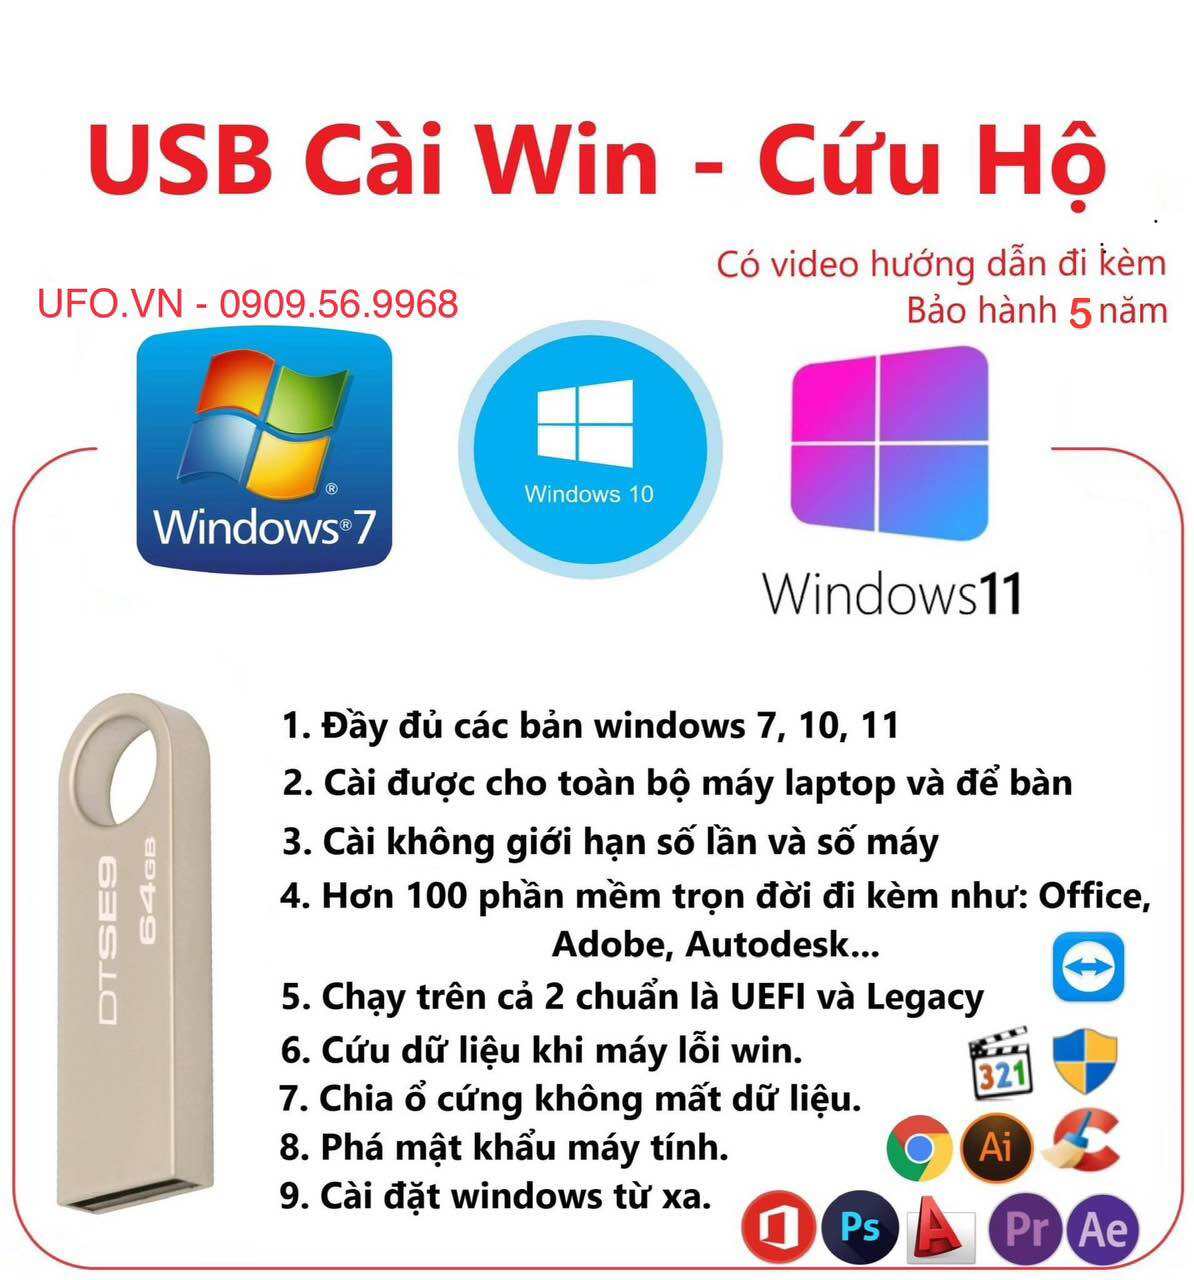 USB cài Win cứu hộ máy tính